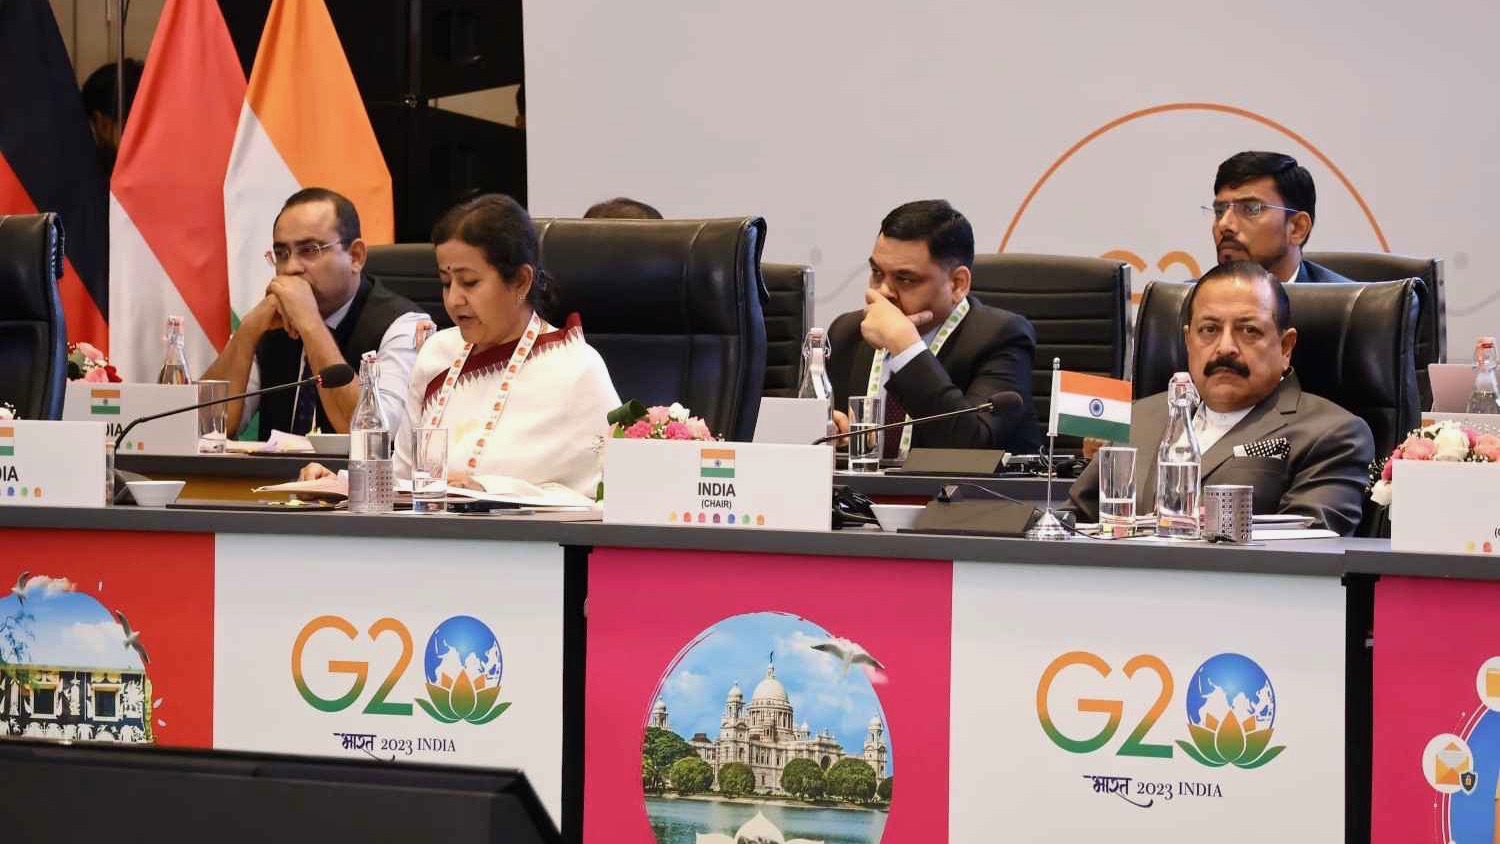 G20 summit India